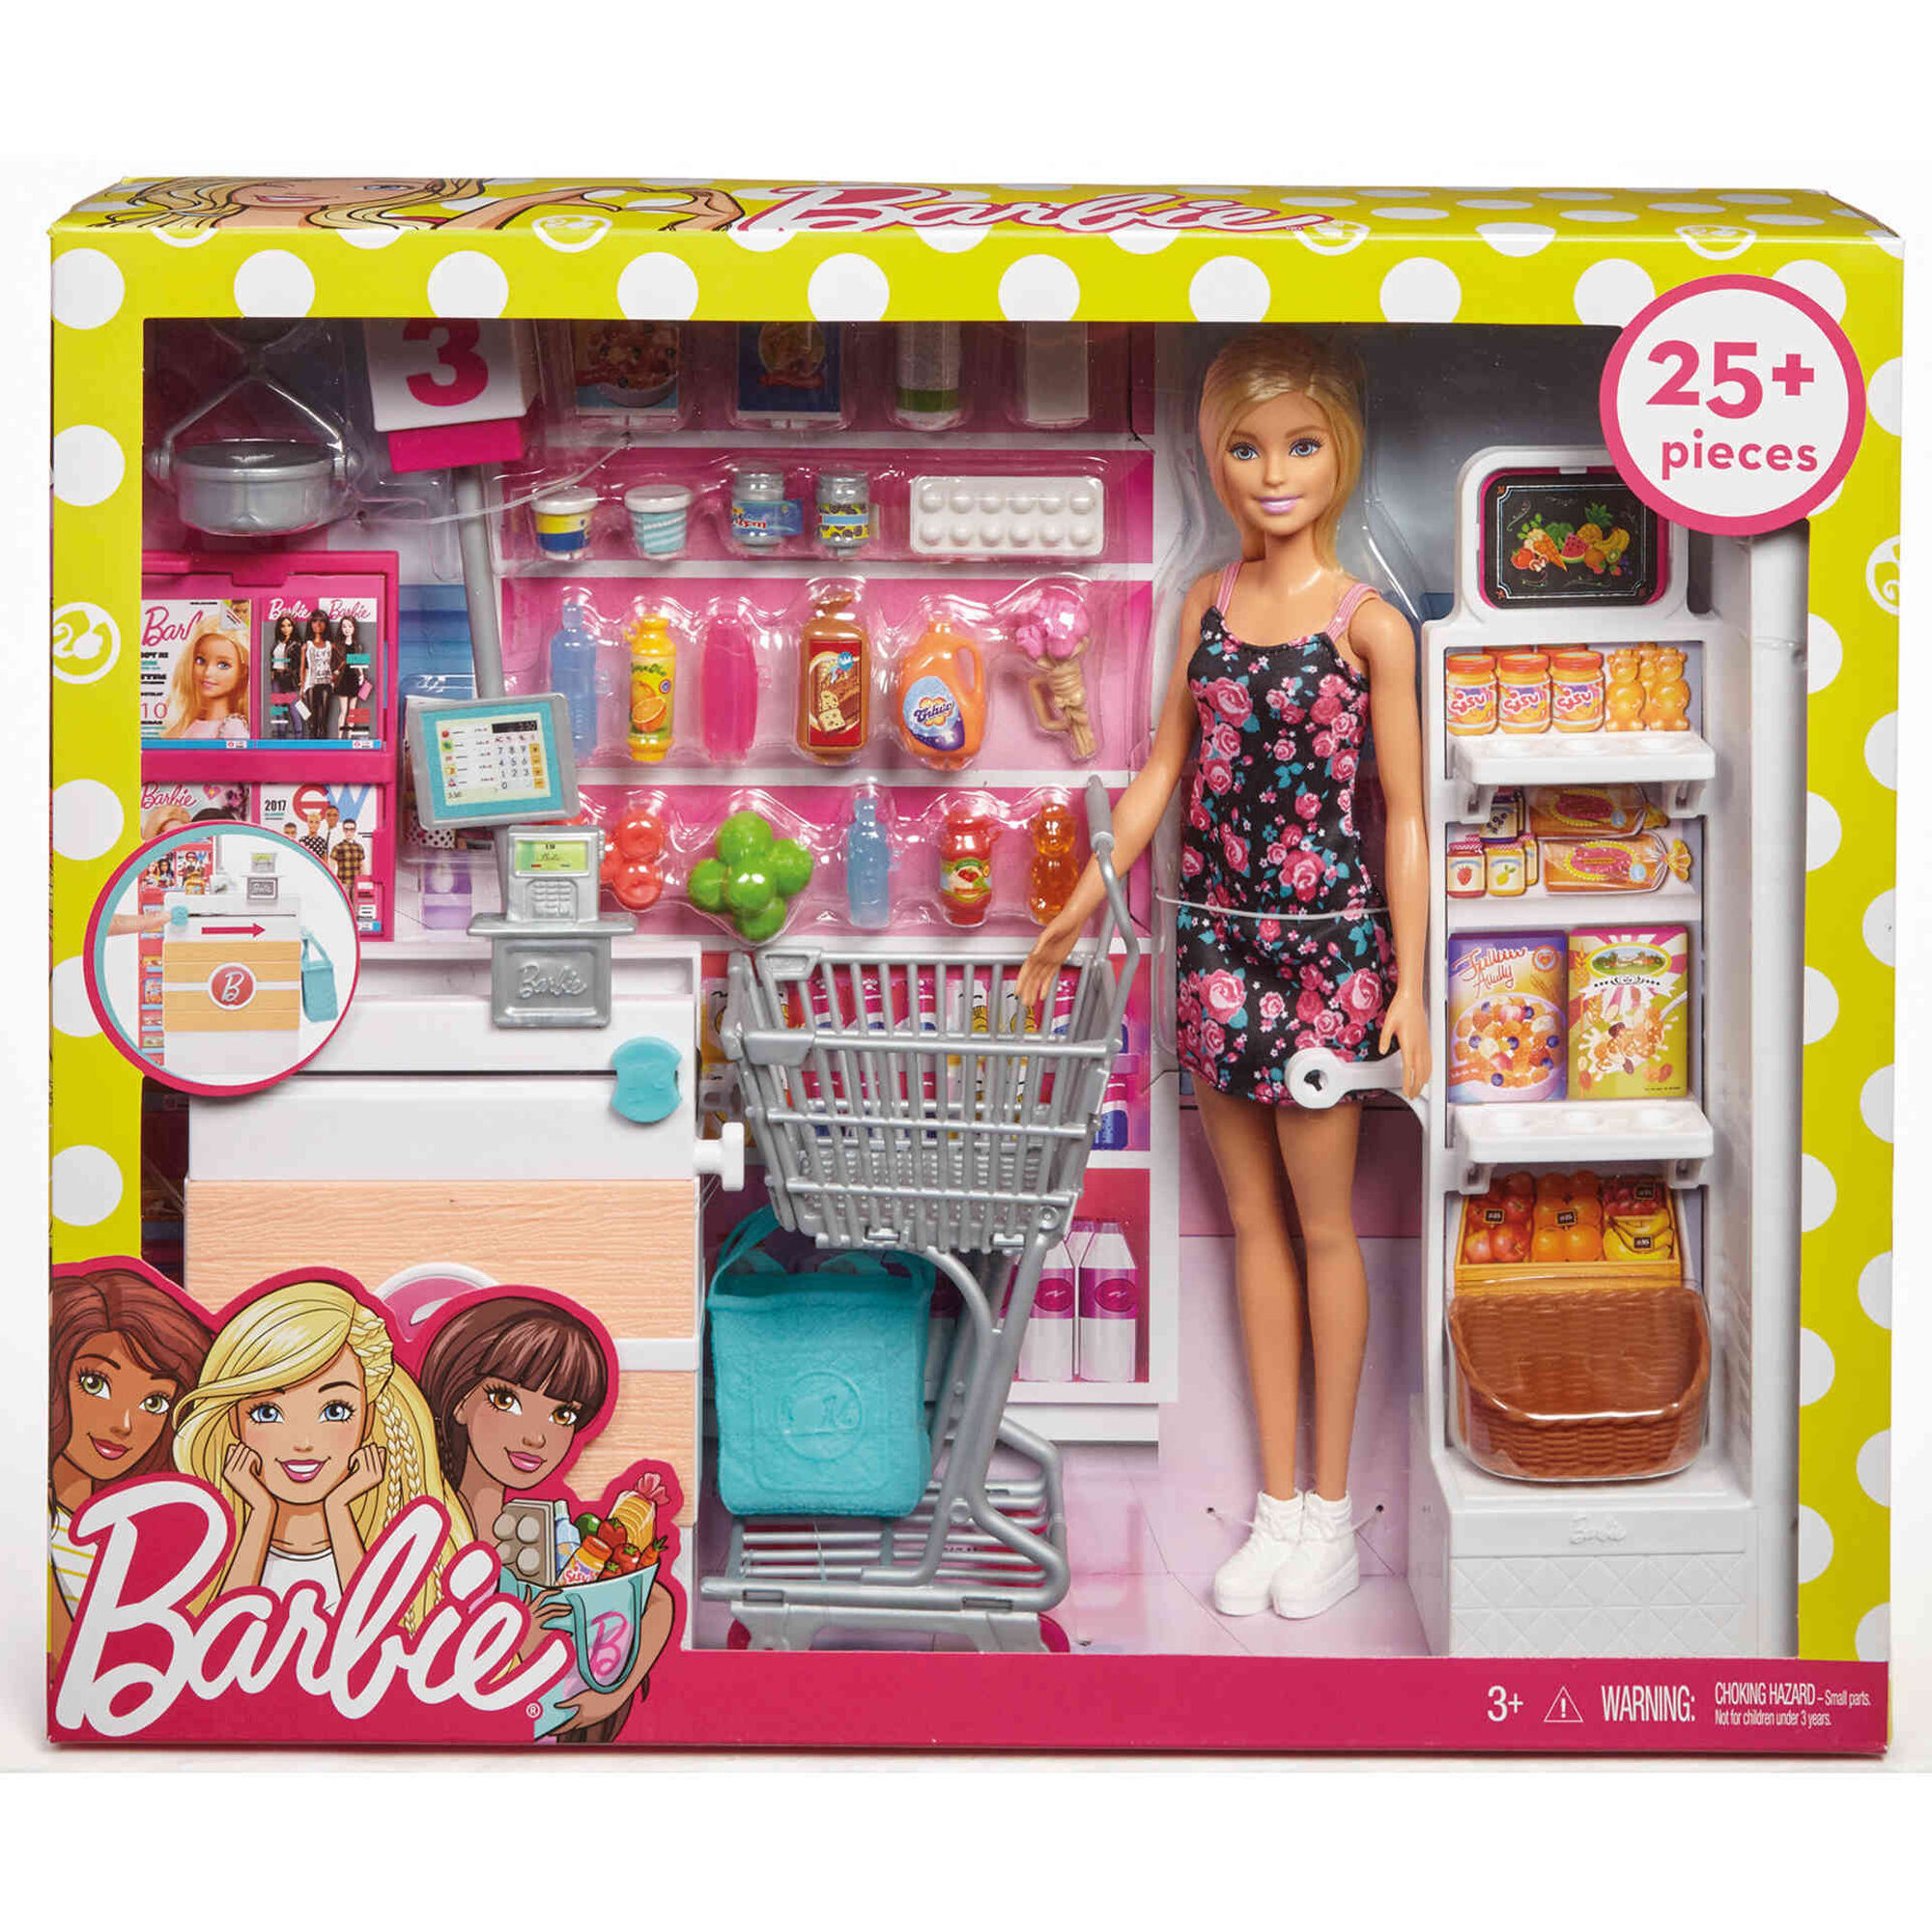 Игрушки для девушек купить. Набор Barbie в супермаркете, 28 см, frp01. Набор Barbie frp01 супермаркет. Куклы Барби плейсет. Кукла Барби Mattel супермаркет.